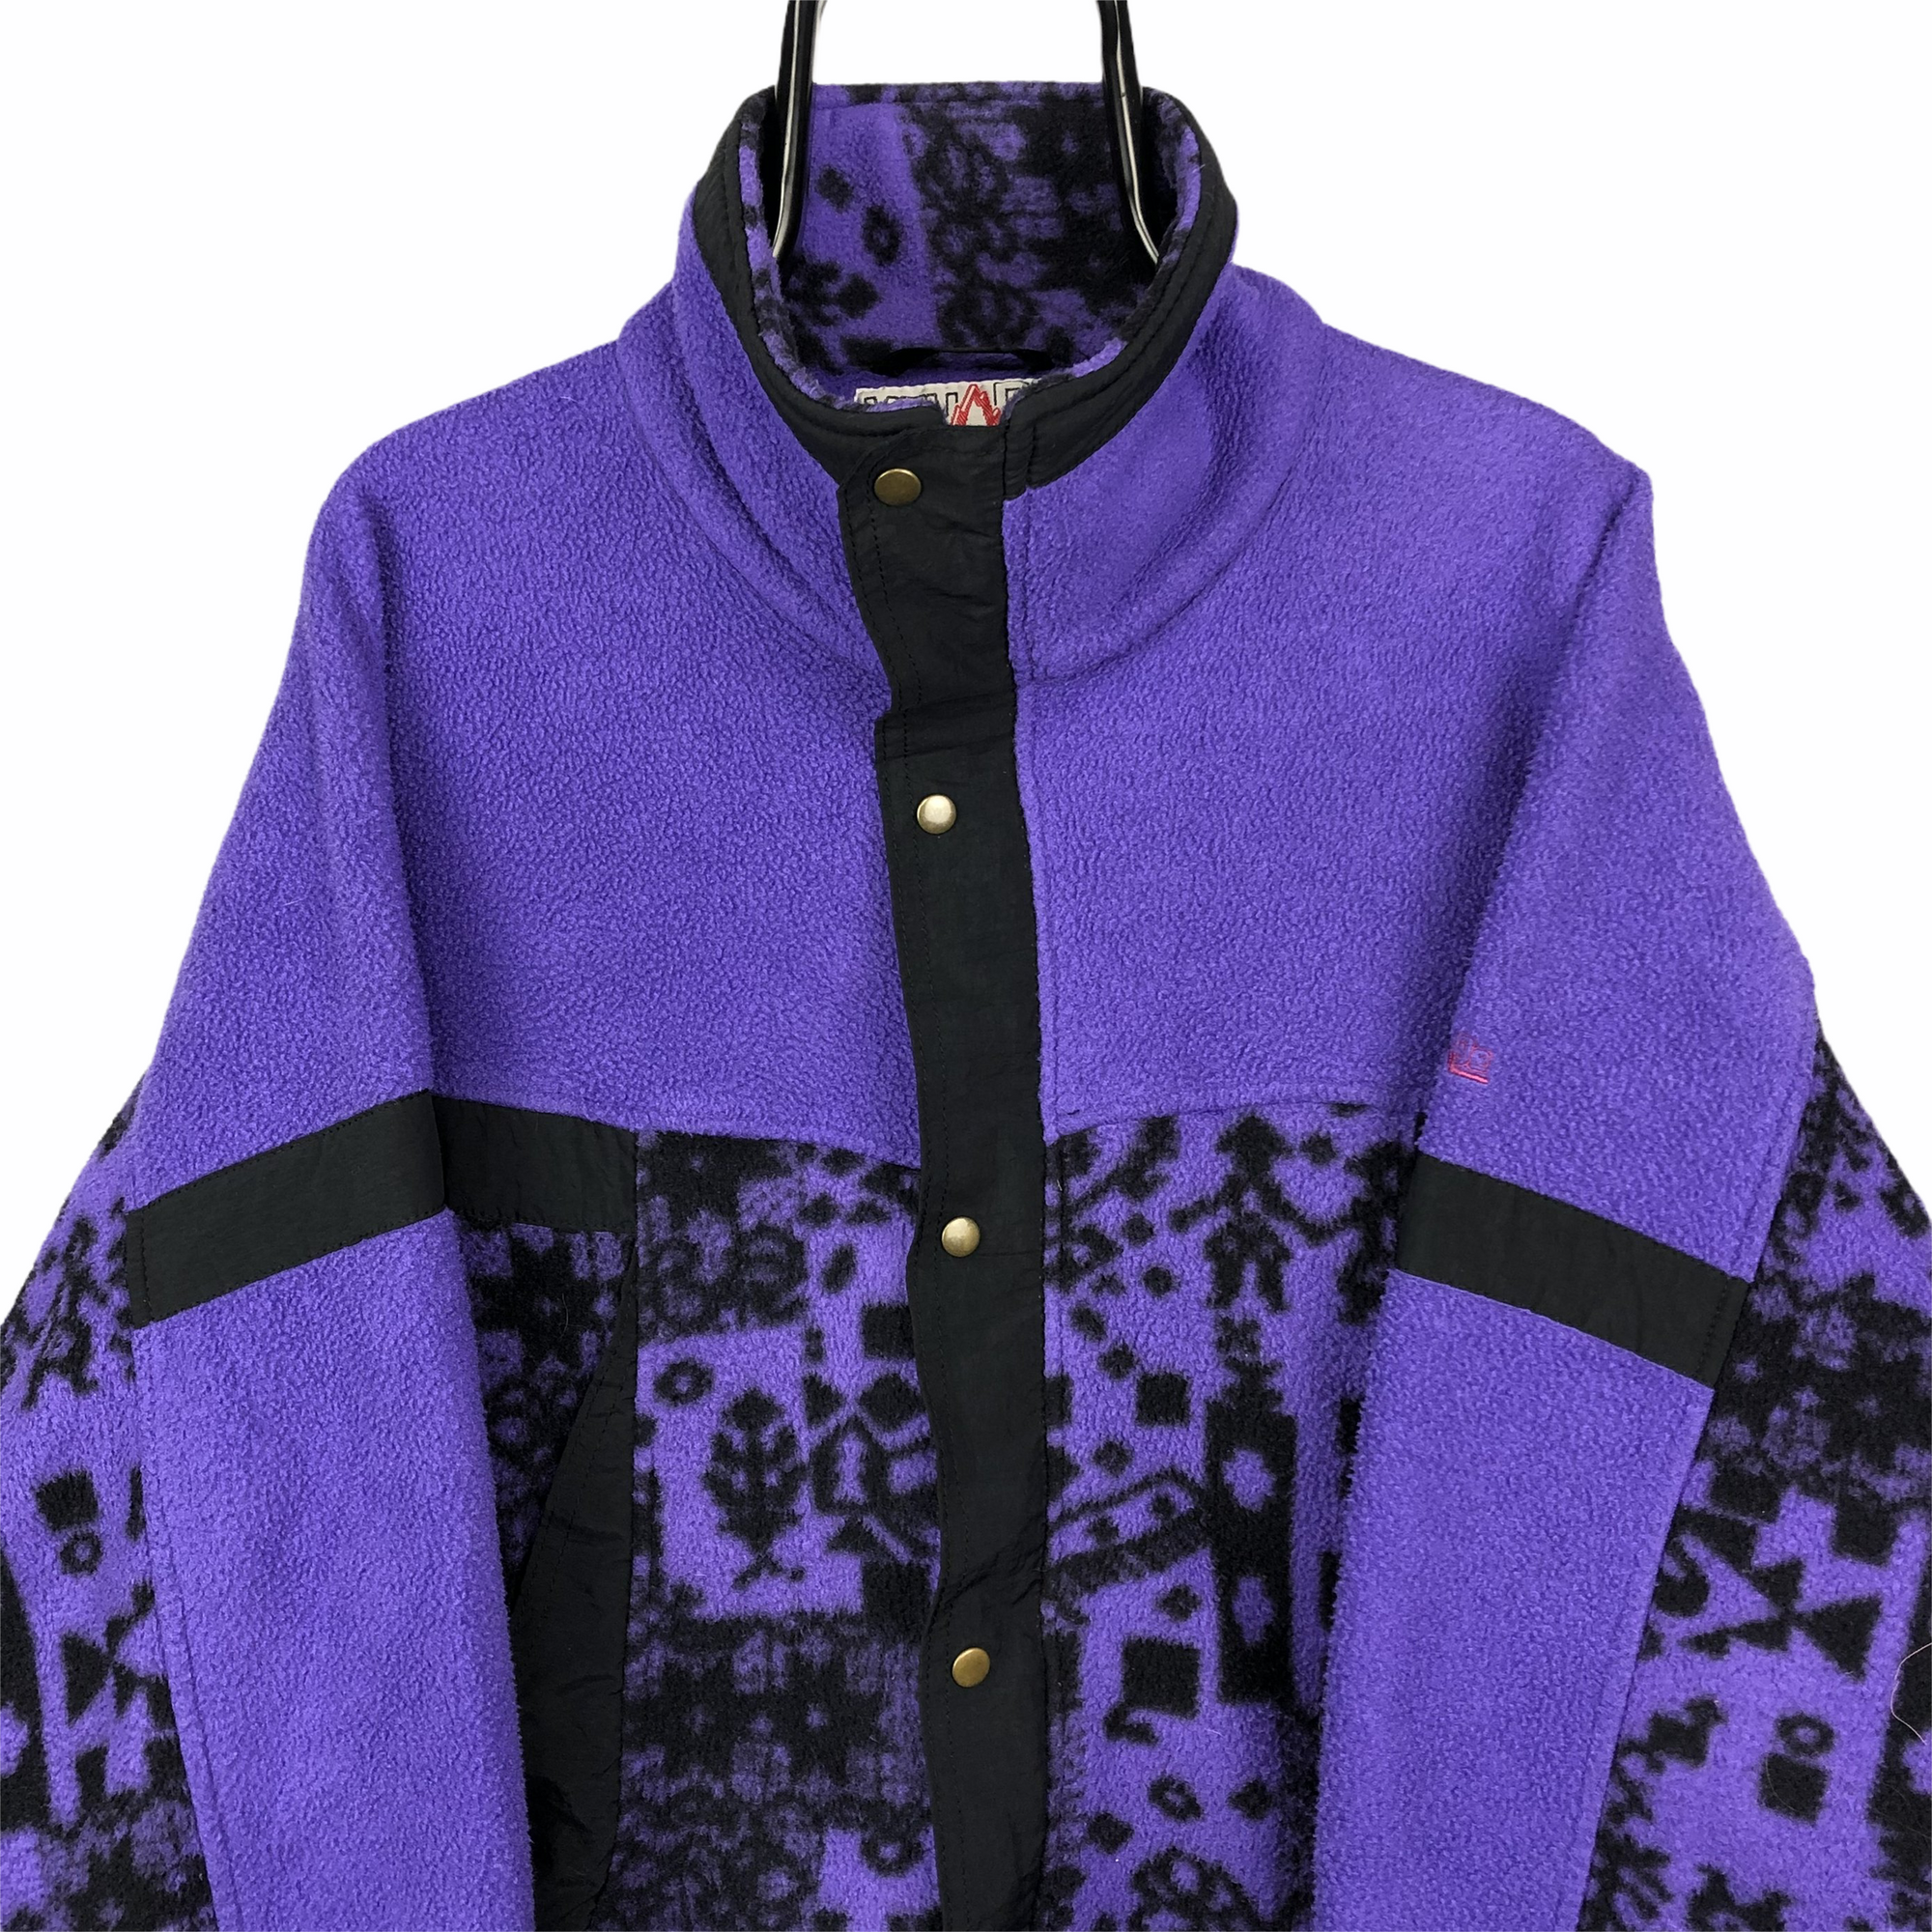 Vintage Polarlite Zip Fleece in Purple/Black - Men's Large/Women's XL